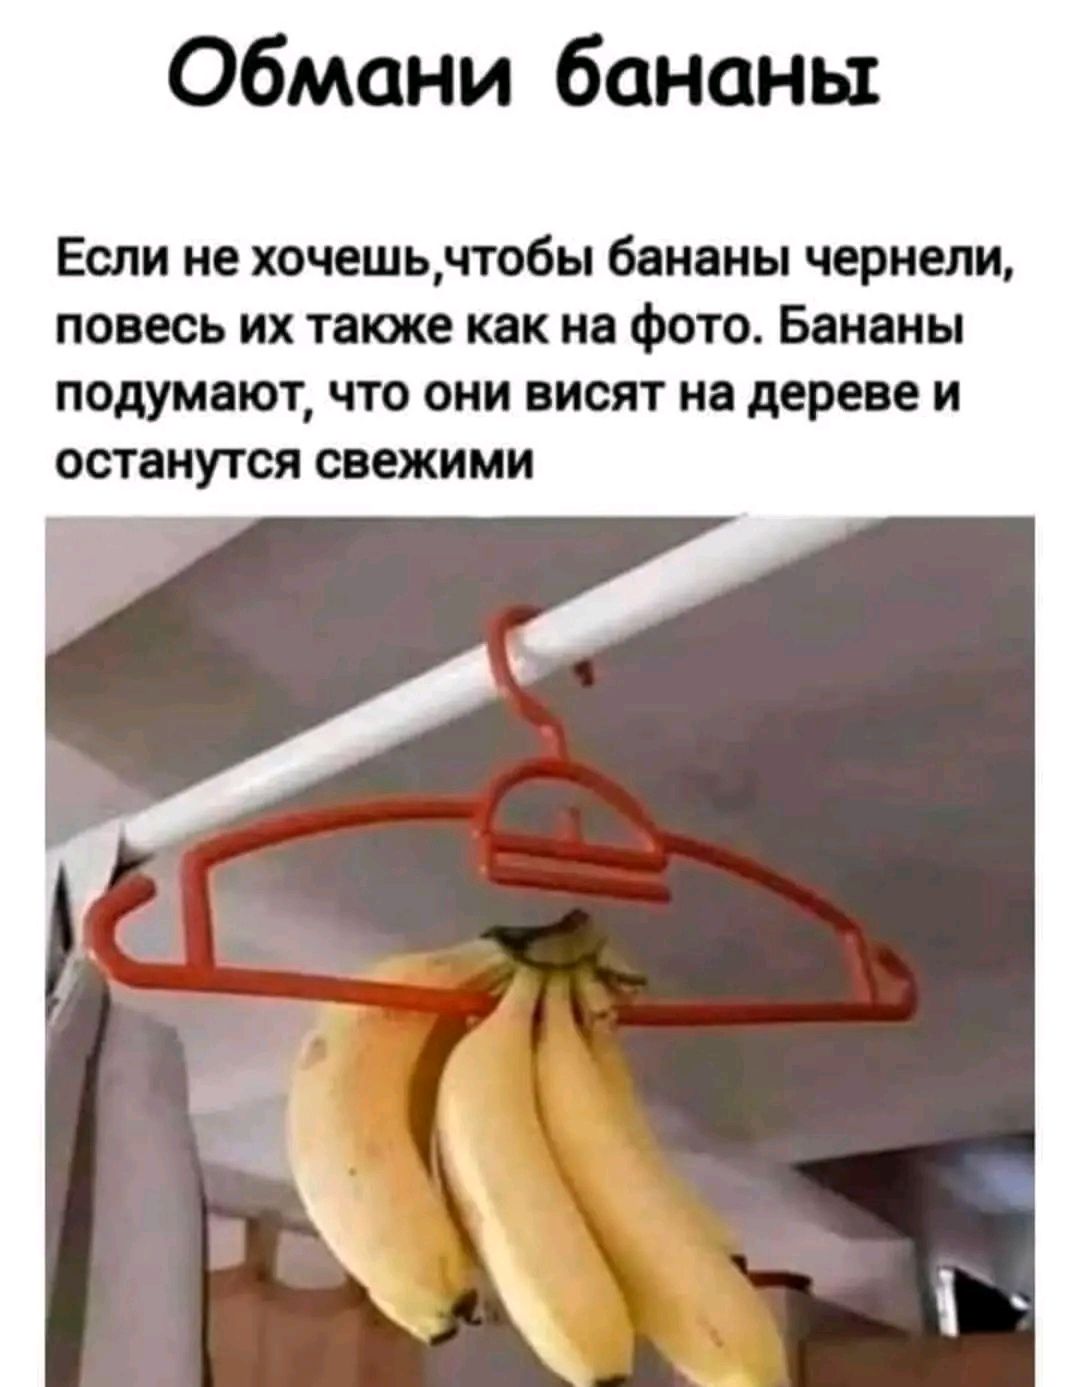 Обмани бананы Если не хочешь пабы бананы черныи понесь их таюке как на Фото Бананы ПОДУМЩОТ ЧТО ОНИ висят Ні дереве И остану гся свежими